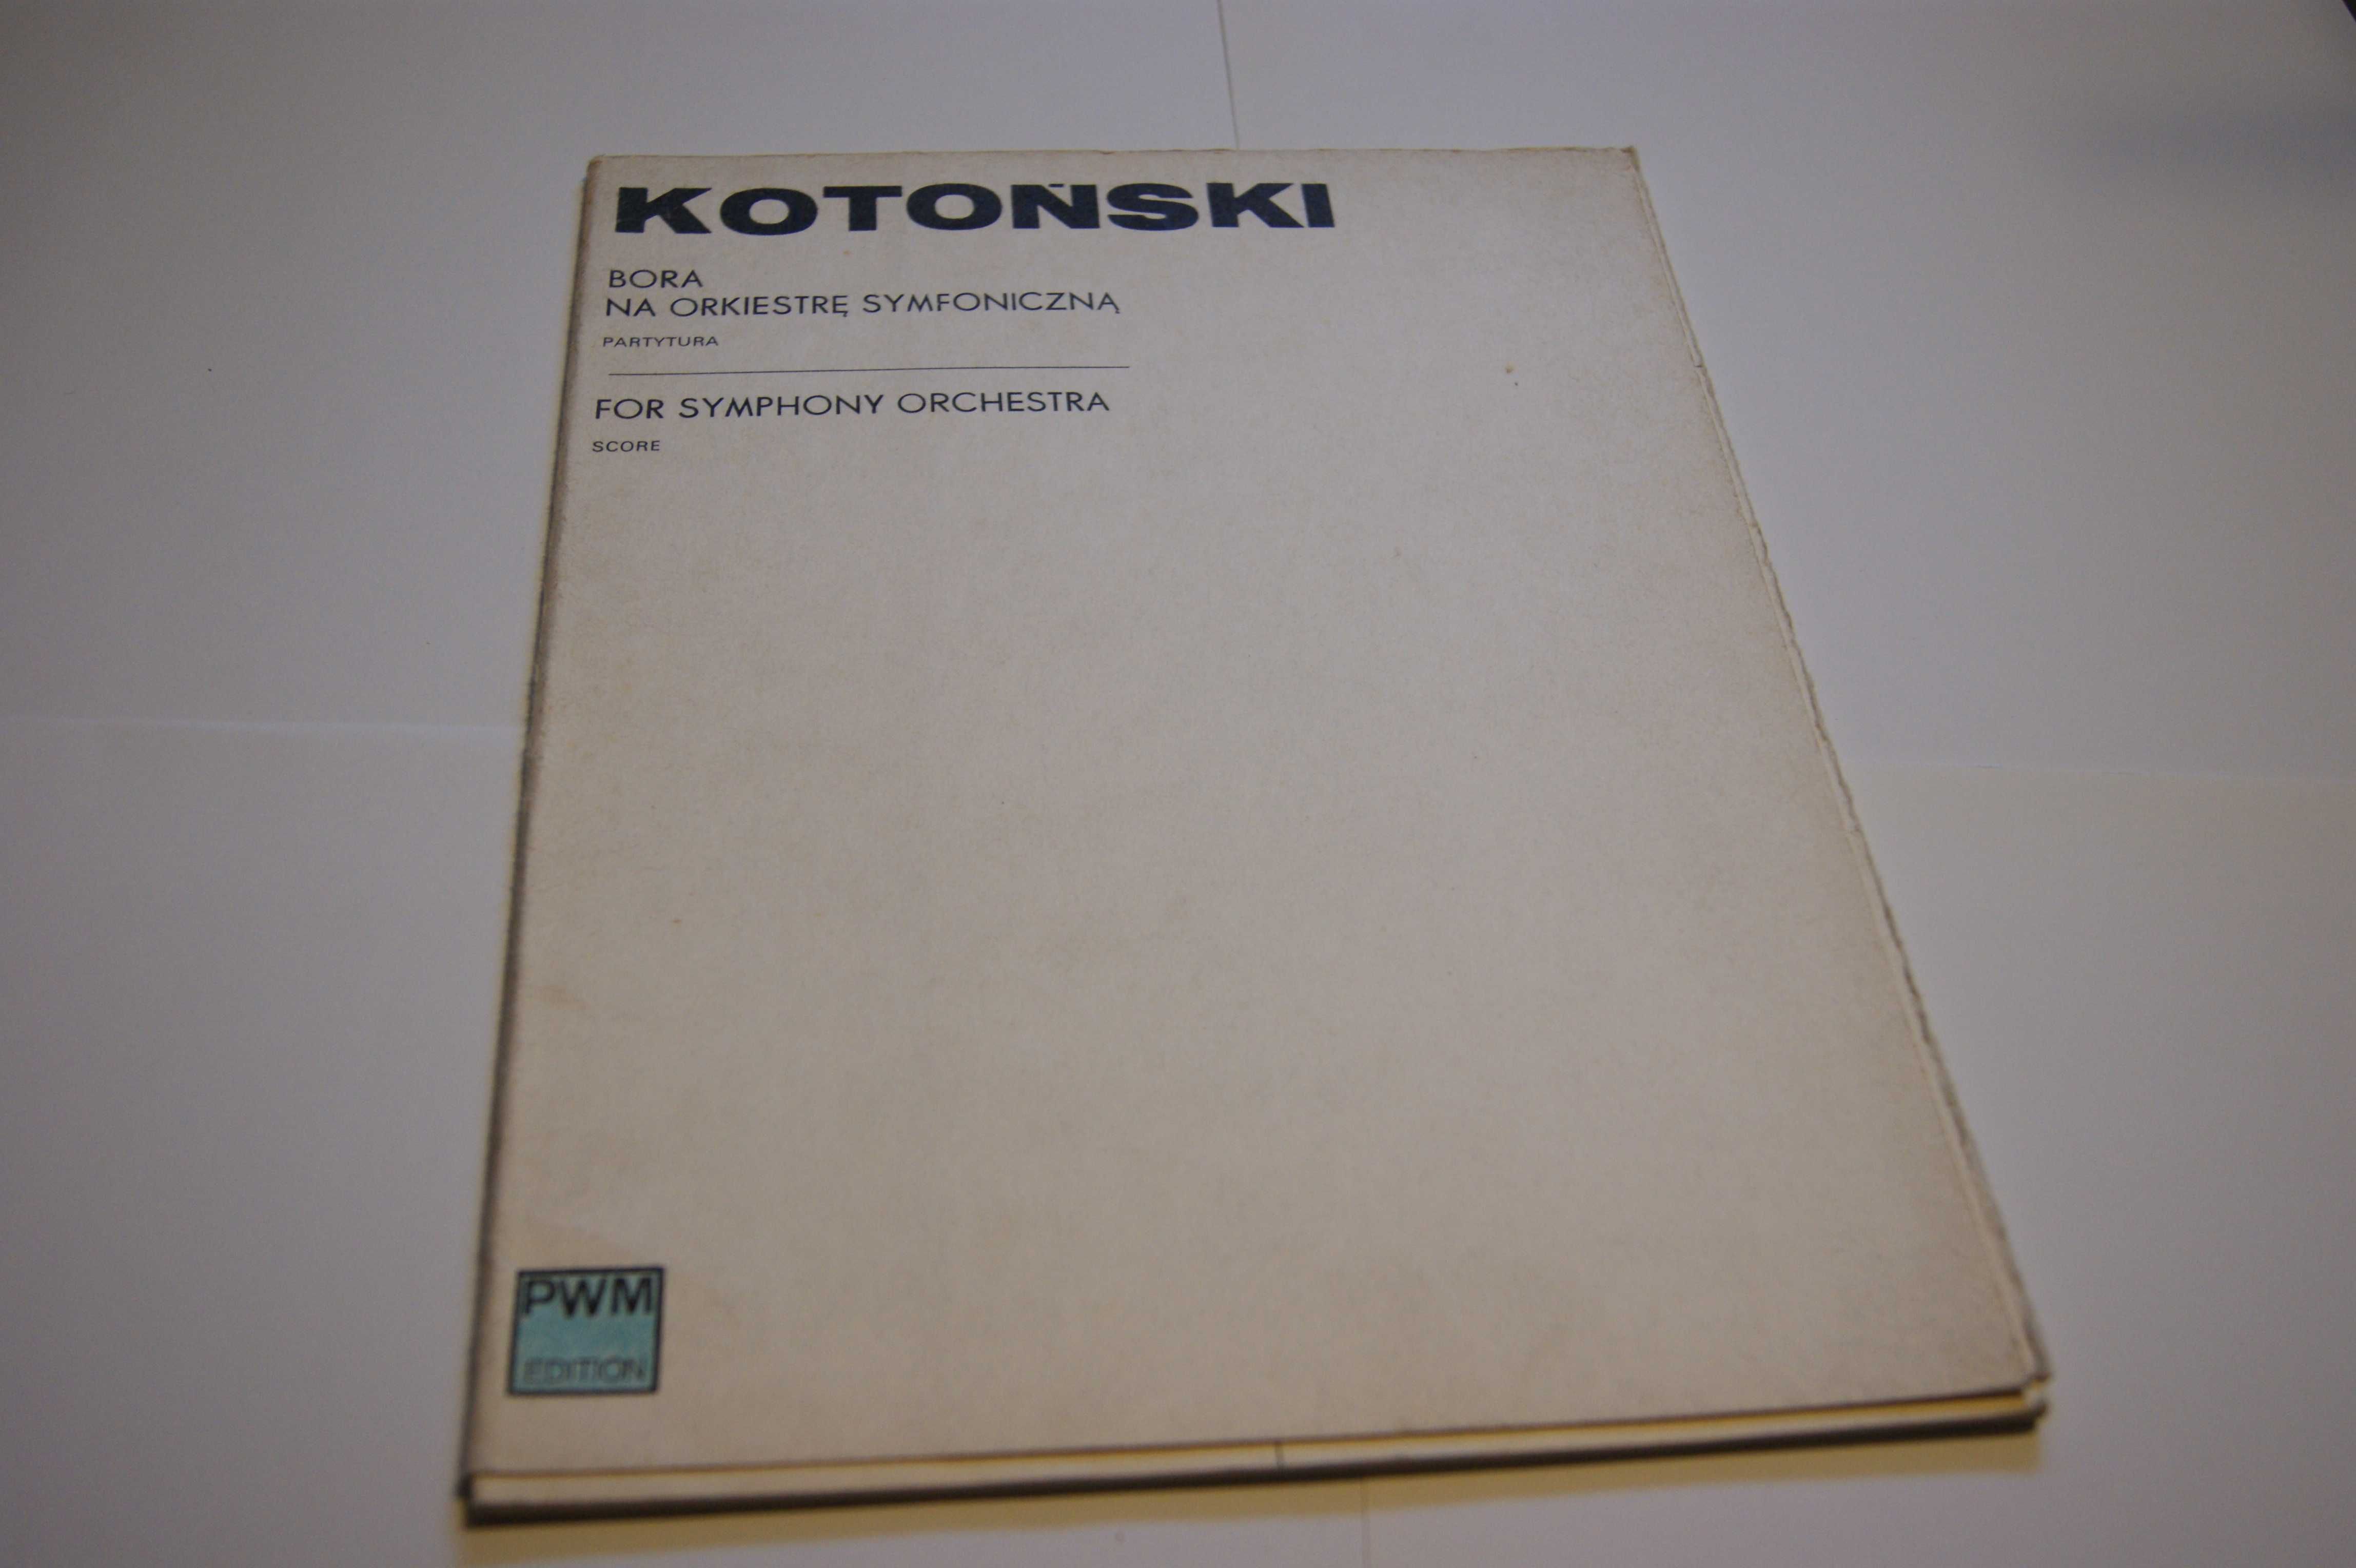 Włodzimierz Kotoński – "Bora" na orkiestrę symfoniczną